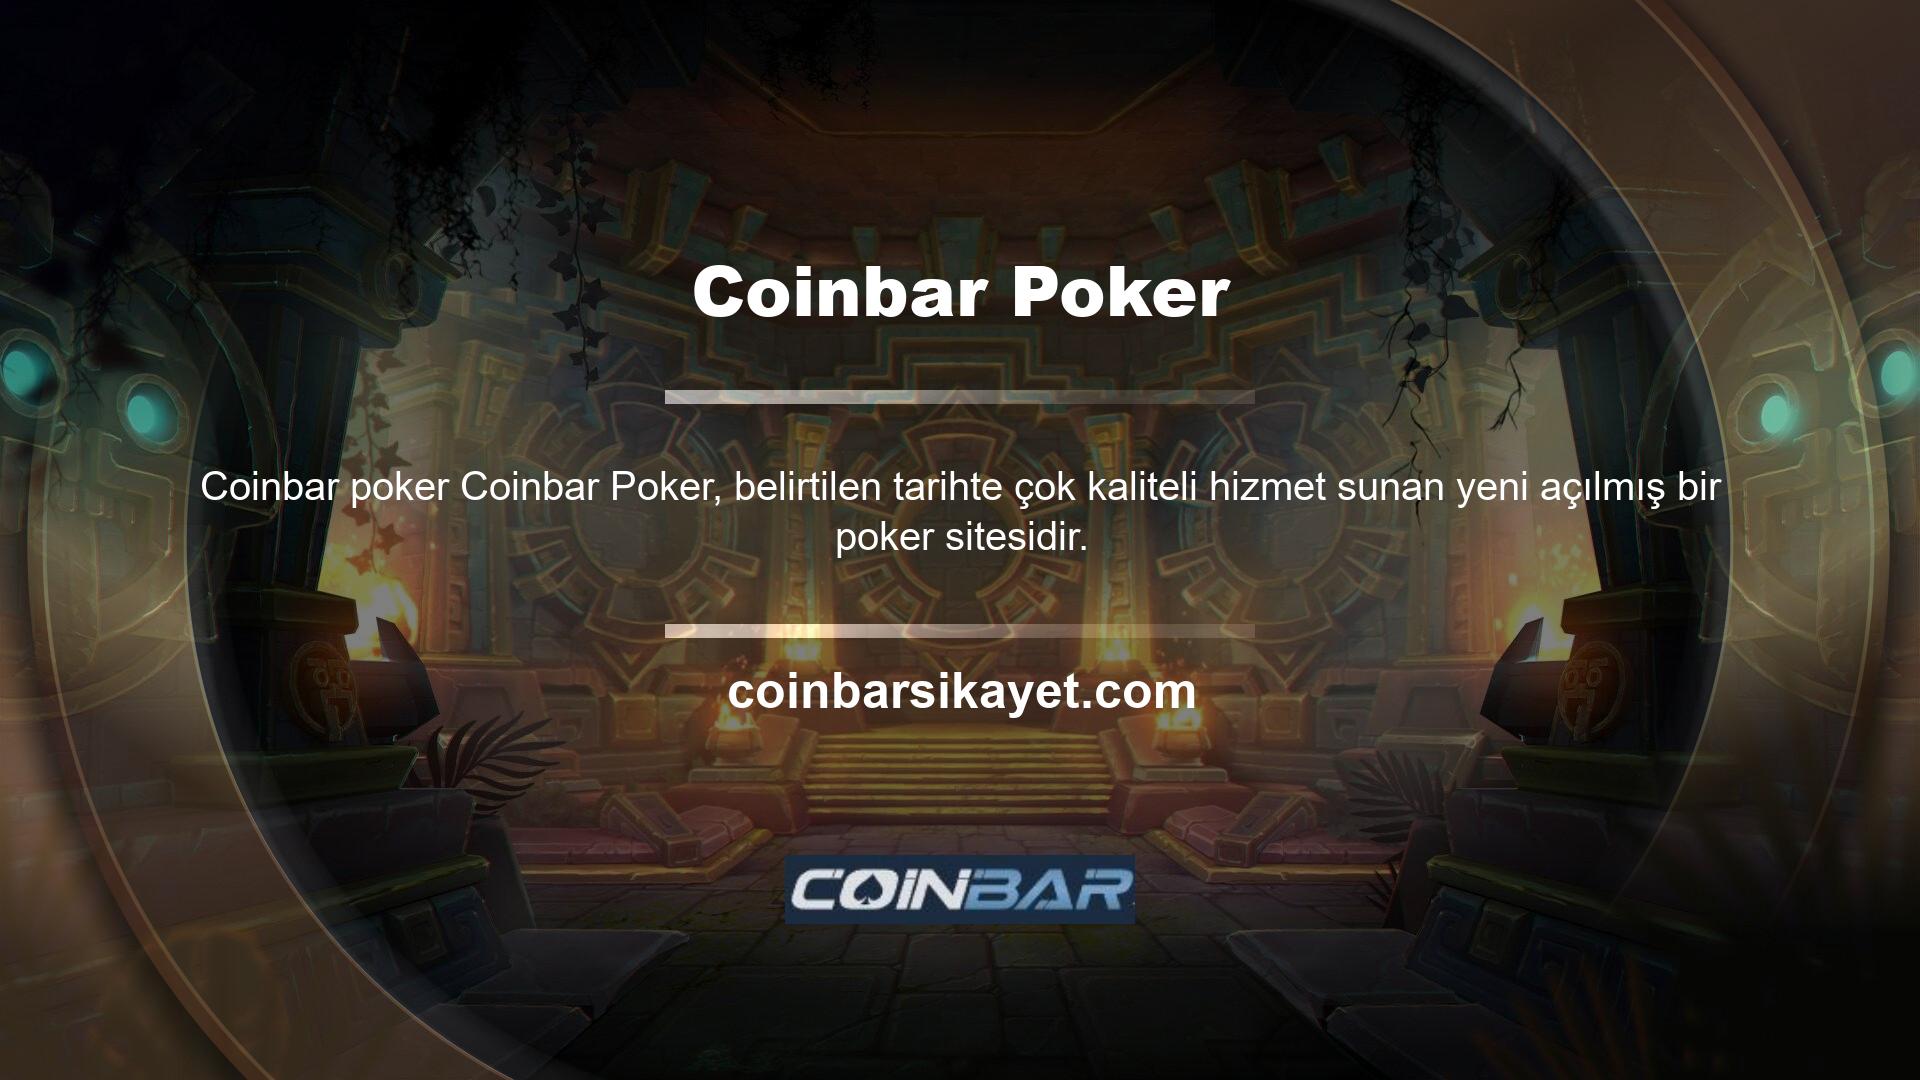 Ne tür Coinbar Poker vardır? Sunulan yaygın oyun seçenekleri web sitesinin üst kısmında listelenmiştir